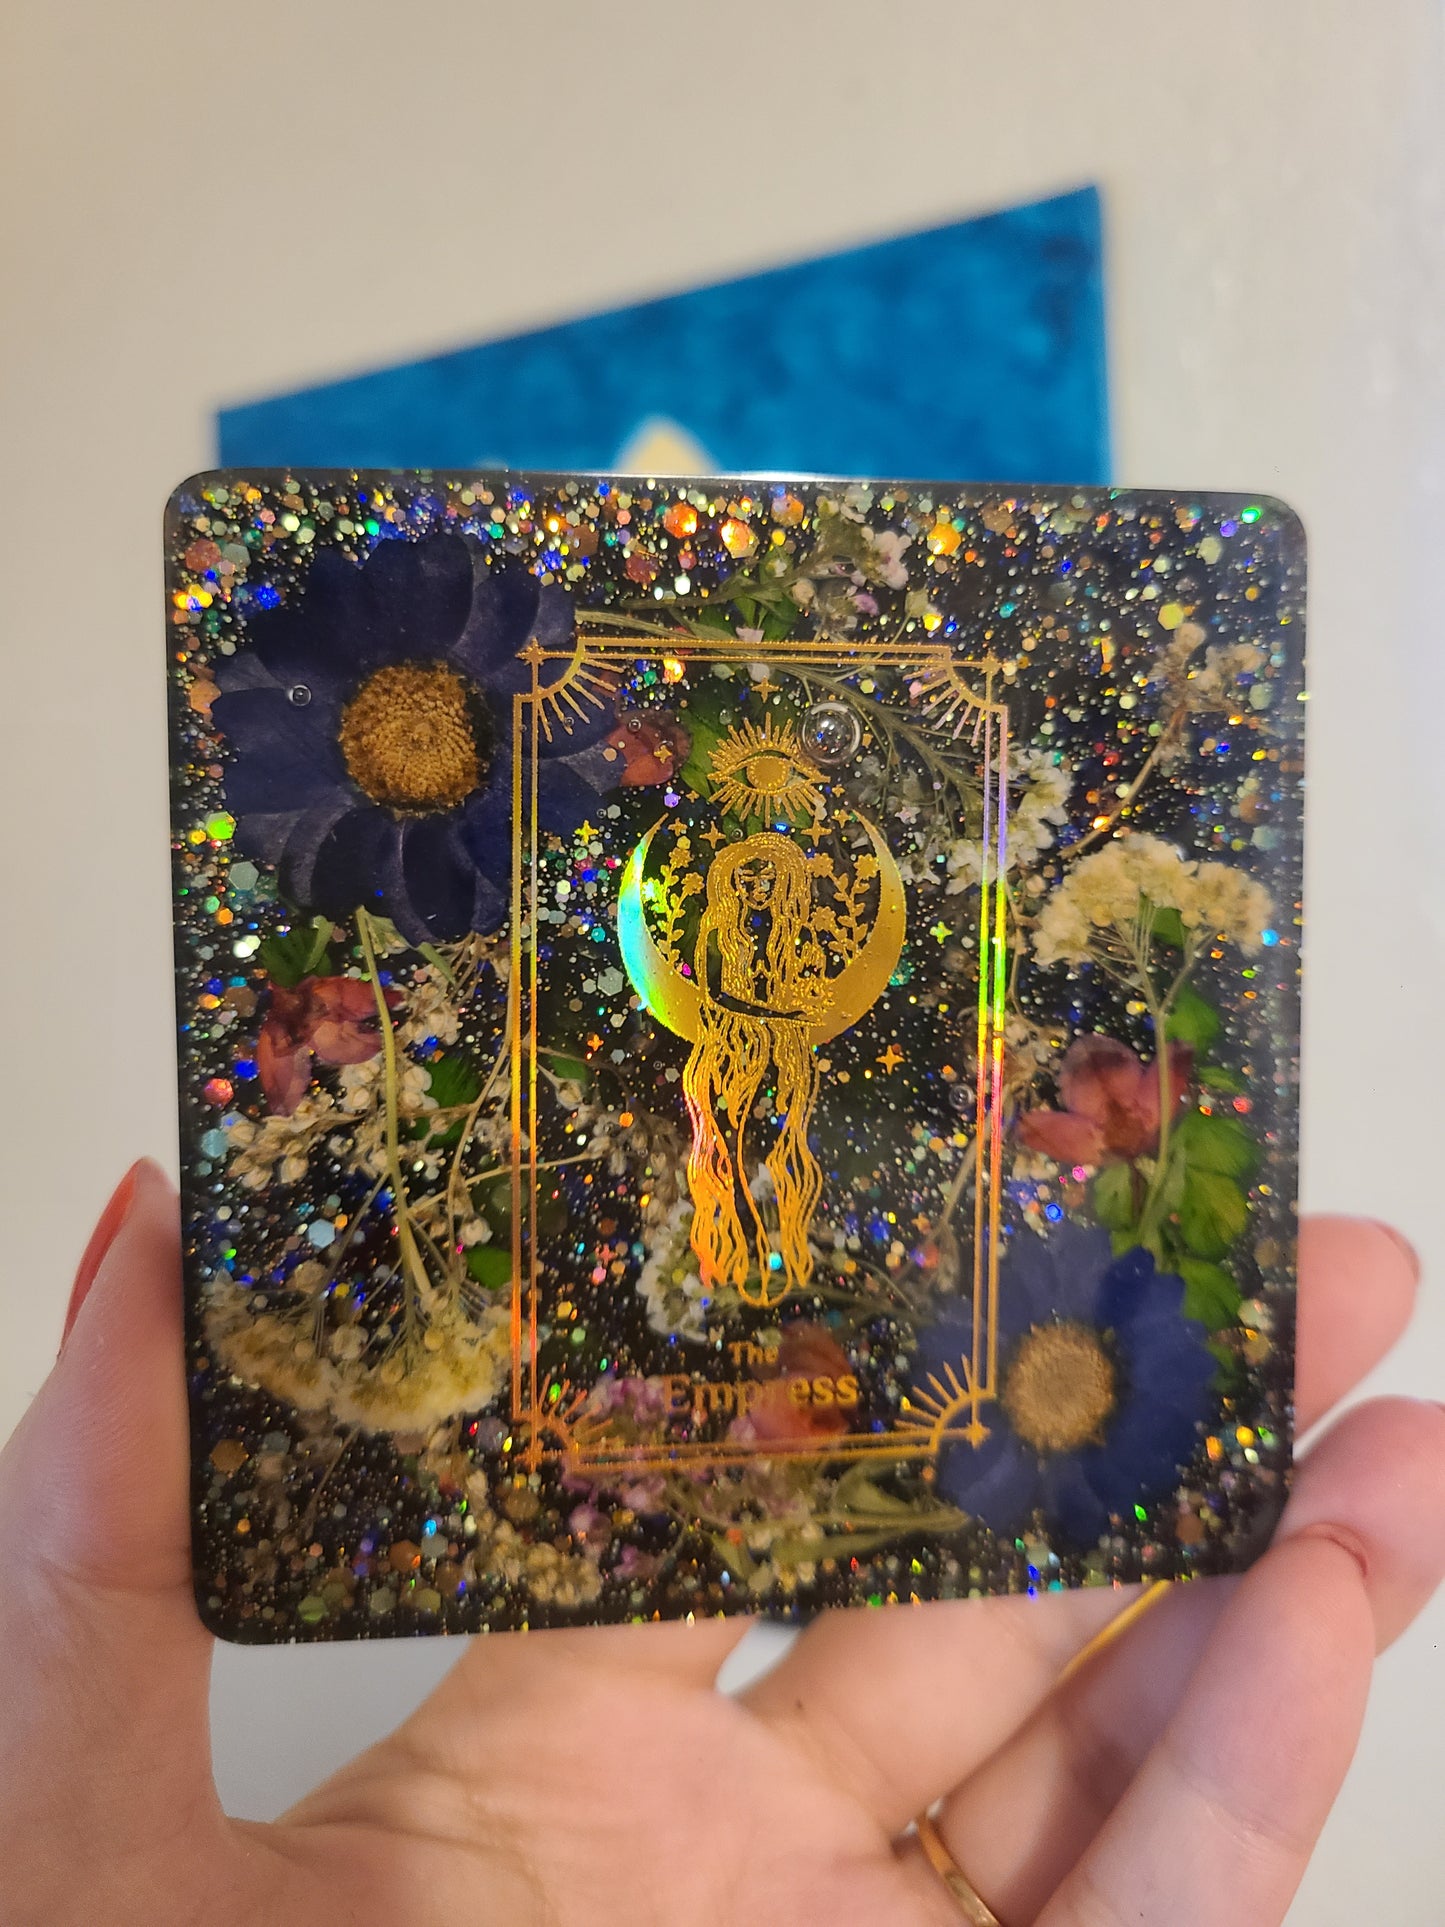 The Empress Tarot Flower Coaster/ Wall Art